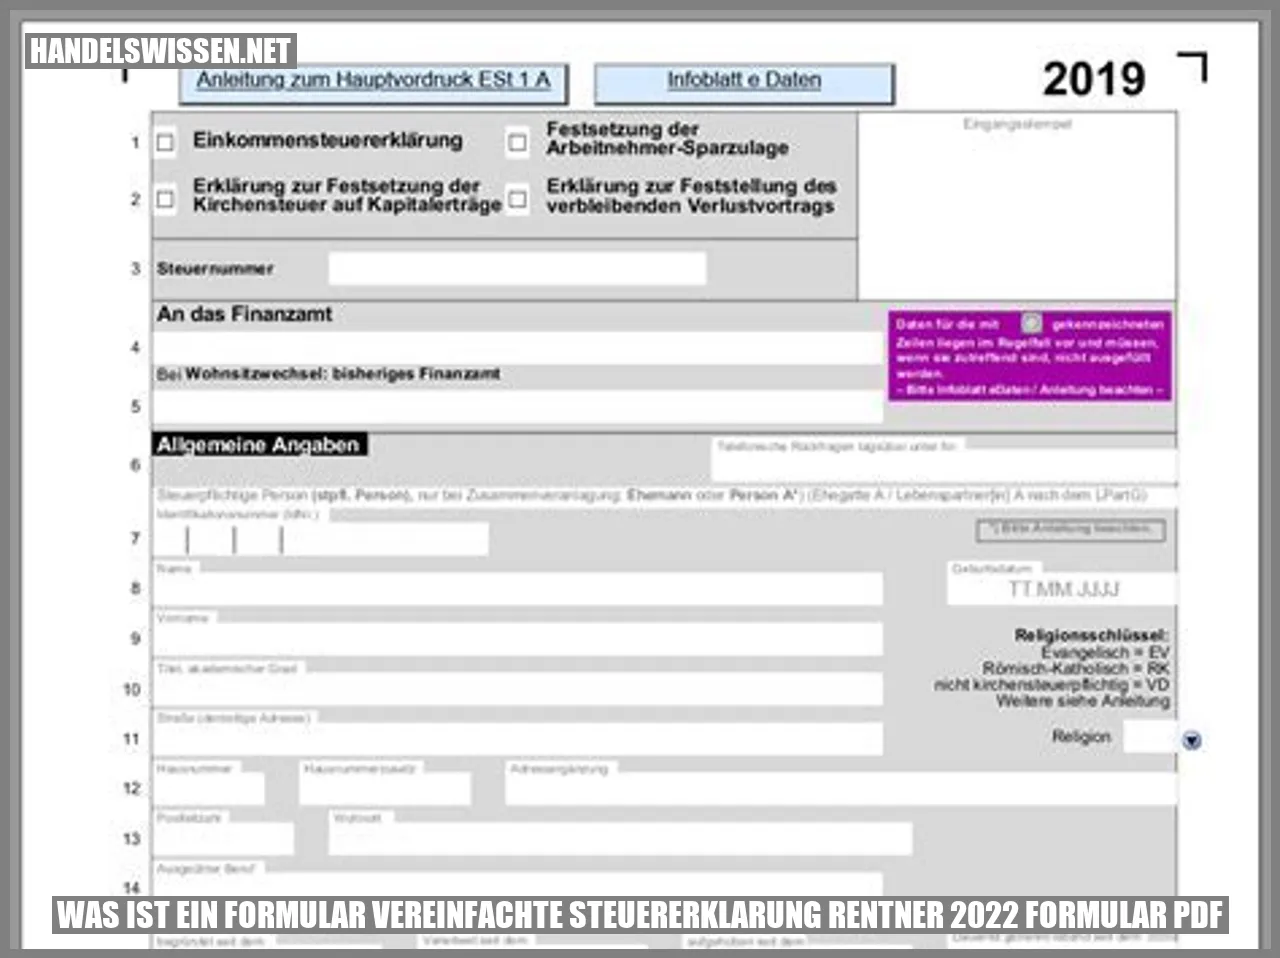 Was ist ein Formular? vereinfachte steuererklarung rentner 2022 formular pdf